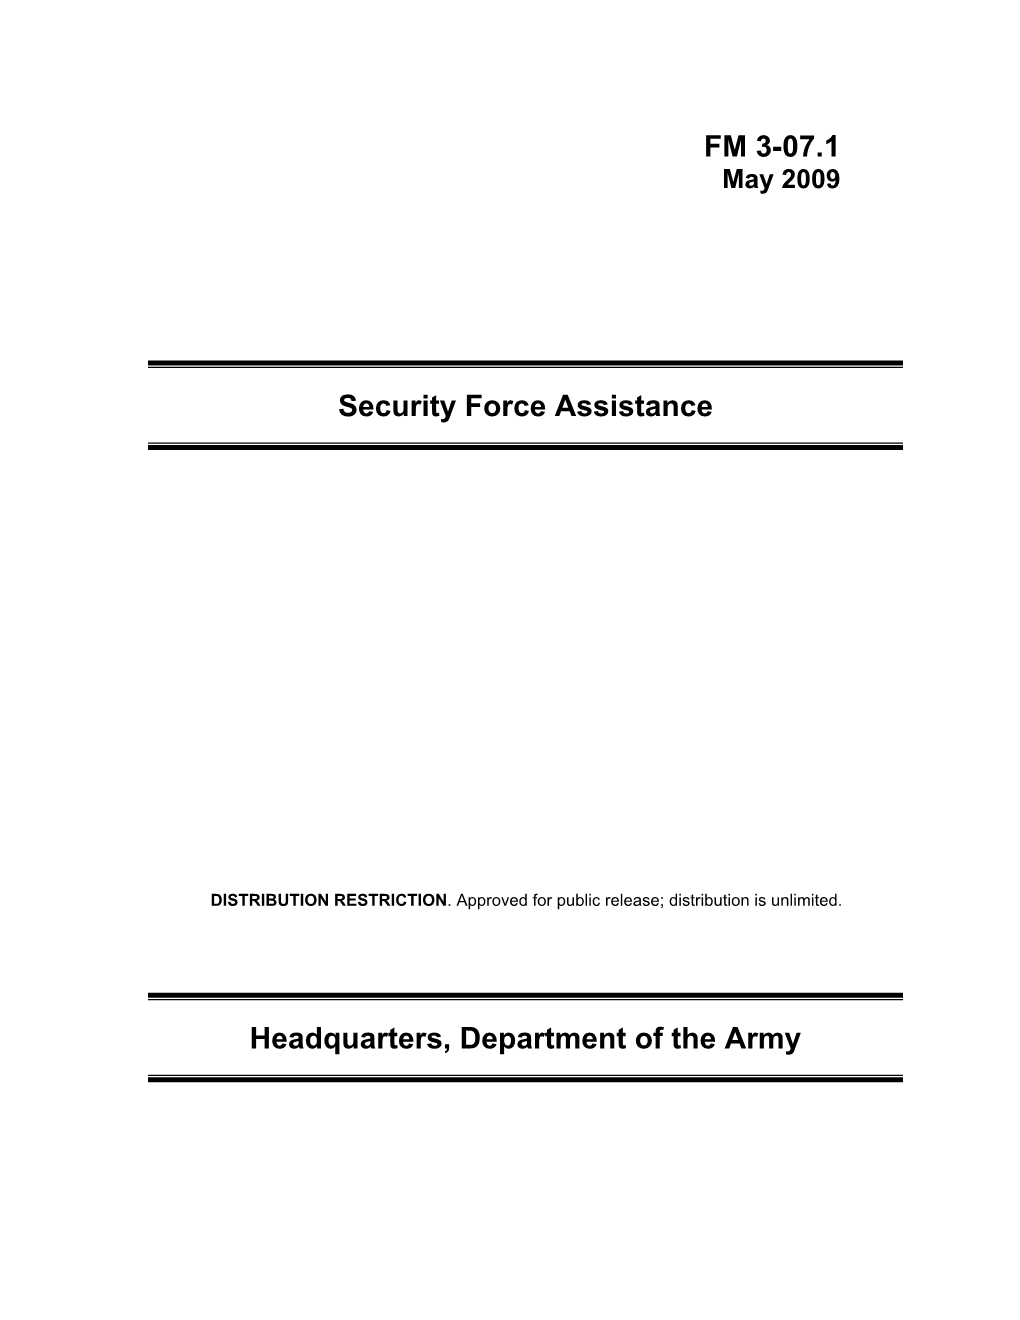 FM 3-07.1: Security Force Assistance